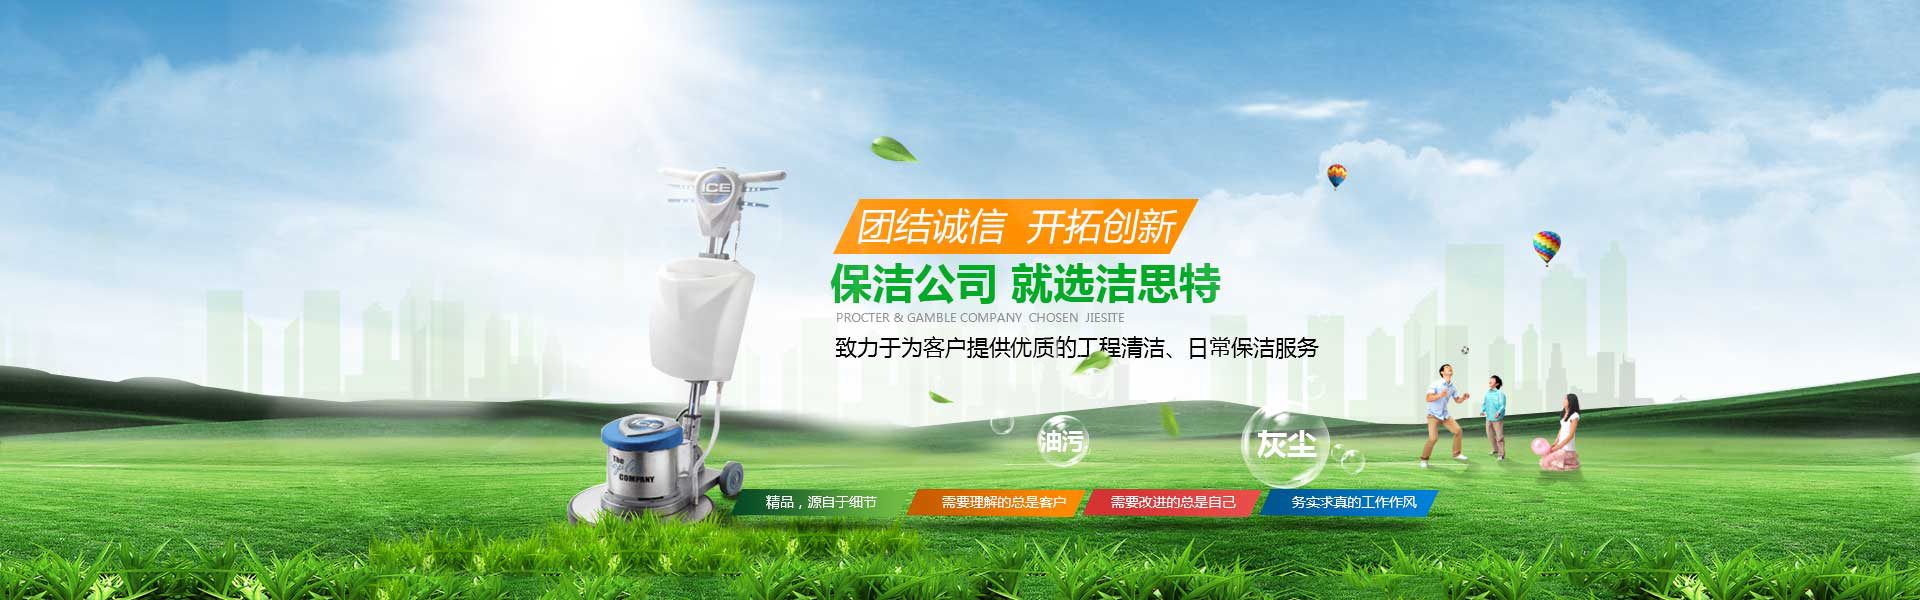 关于当前产品365官网多少·(中国)官方网站的成功案例等相关图片